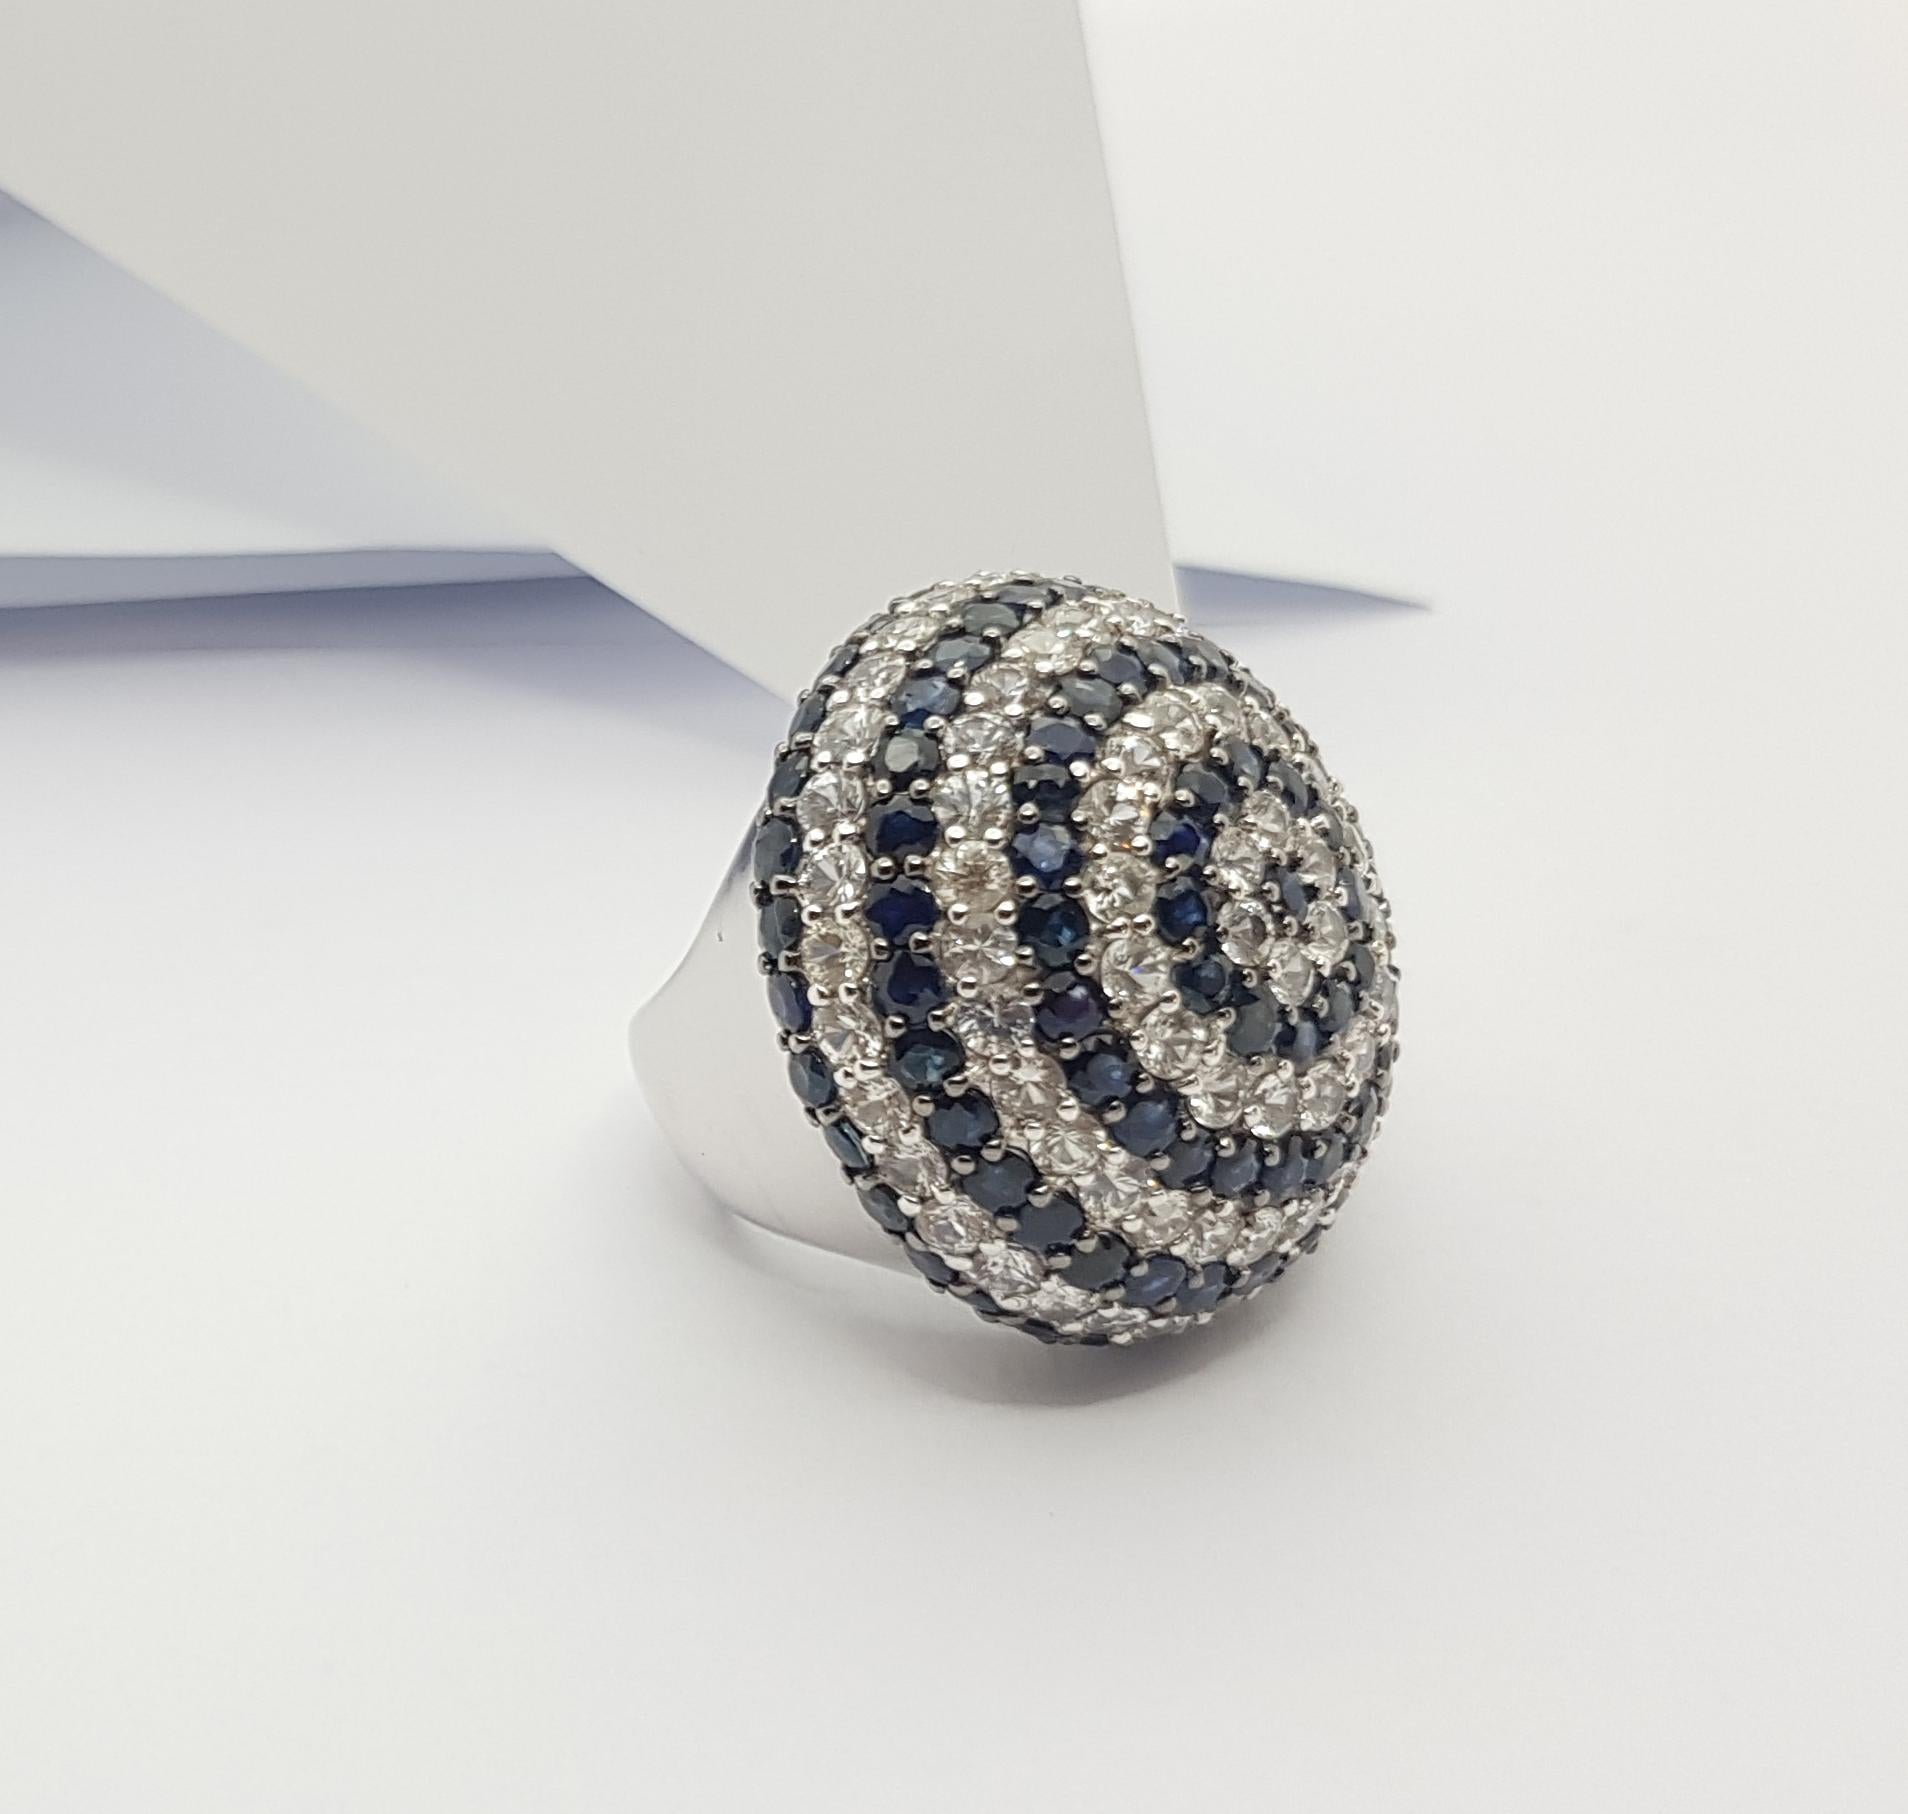 Ring mit weißem Saphir 8,97 Karat und blauem Saphir 11,27 Karat in Silberfassung

Breite:  3,2 cm 
Länge: 3,2 cm
Ringgröße: 55
Gesamtgewicht: 23,38 Gramm

Bitte beachten Sie, dass die Silberfassung mit Rhodium versehen ist, um den Glanz zu fördern